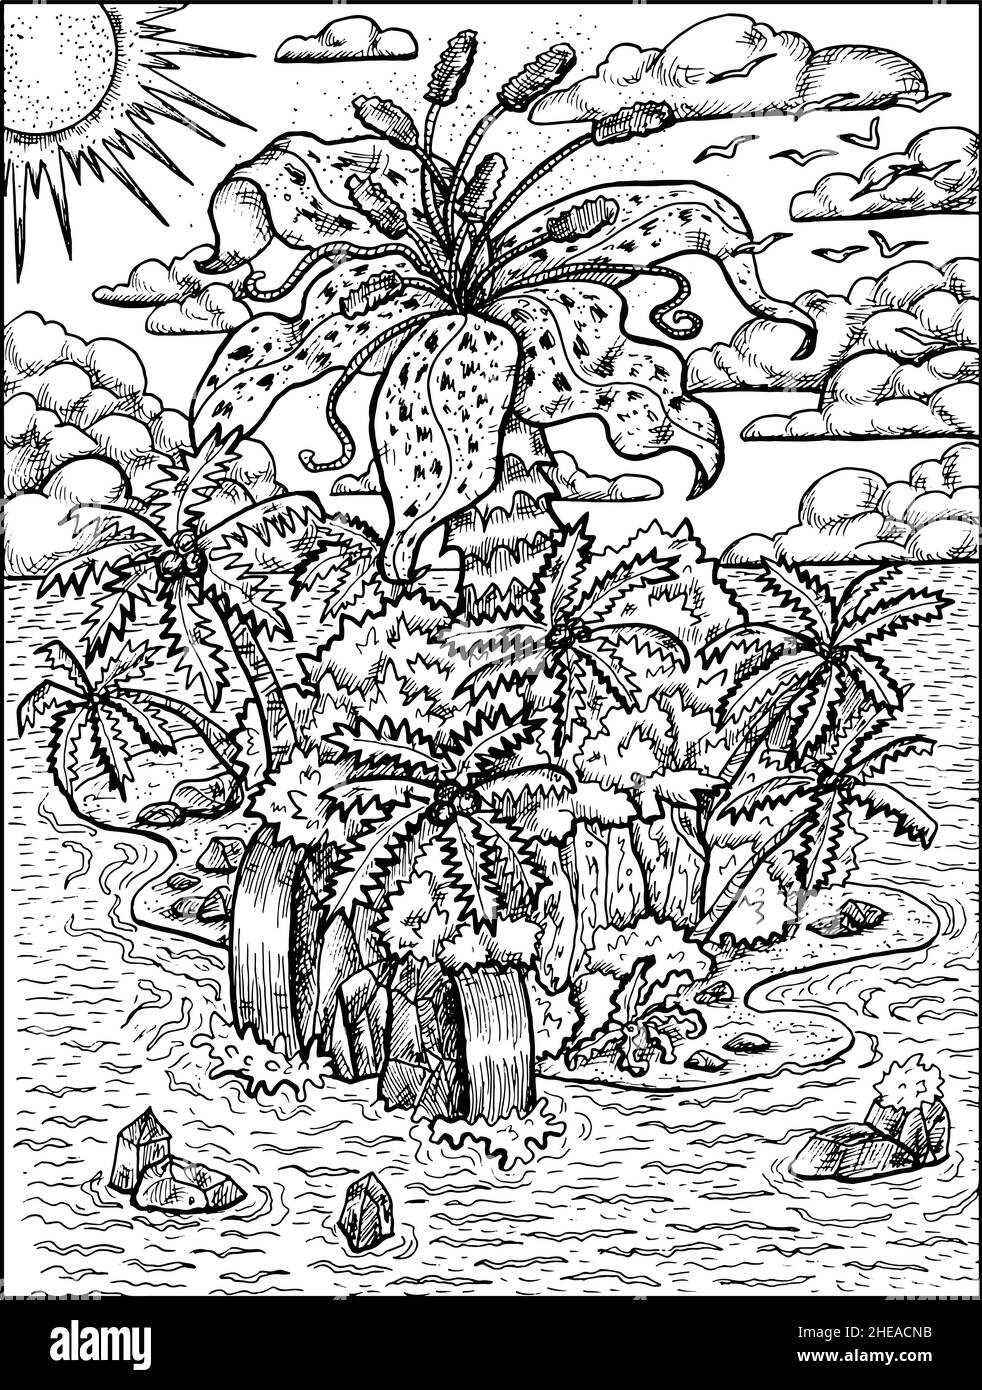 Schwarz-Weiß-Illustration einer unbekannten Insel mit Fantasiepflanzen, Bäumen und Schätzen. Nautische Vektor Vintage-Zeichnungen, marine Konzept, Färbung b Stock Vektor